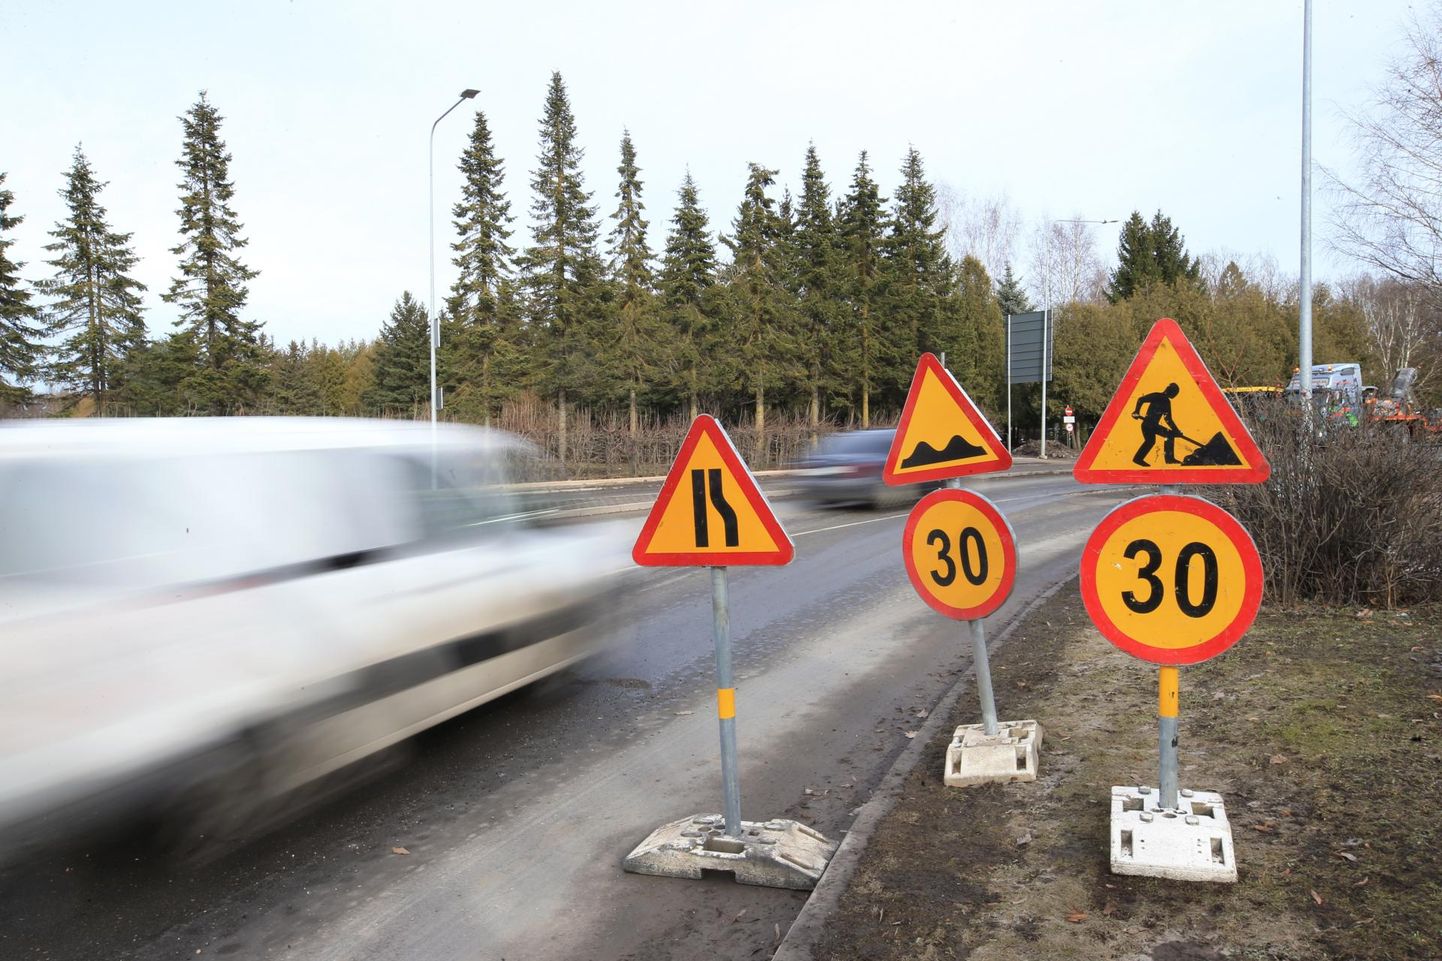 Loobu–Rõmeda teel tuleb hoolega jälgida liiklusmärke. Foto on illustreeriv.